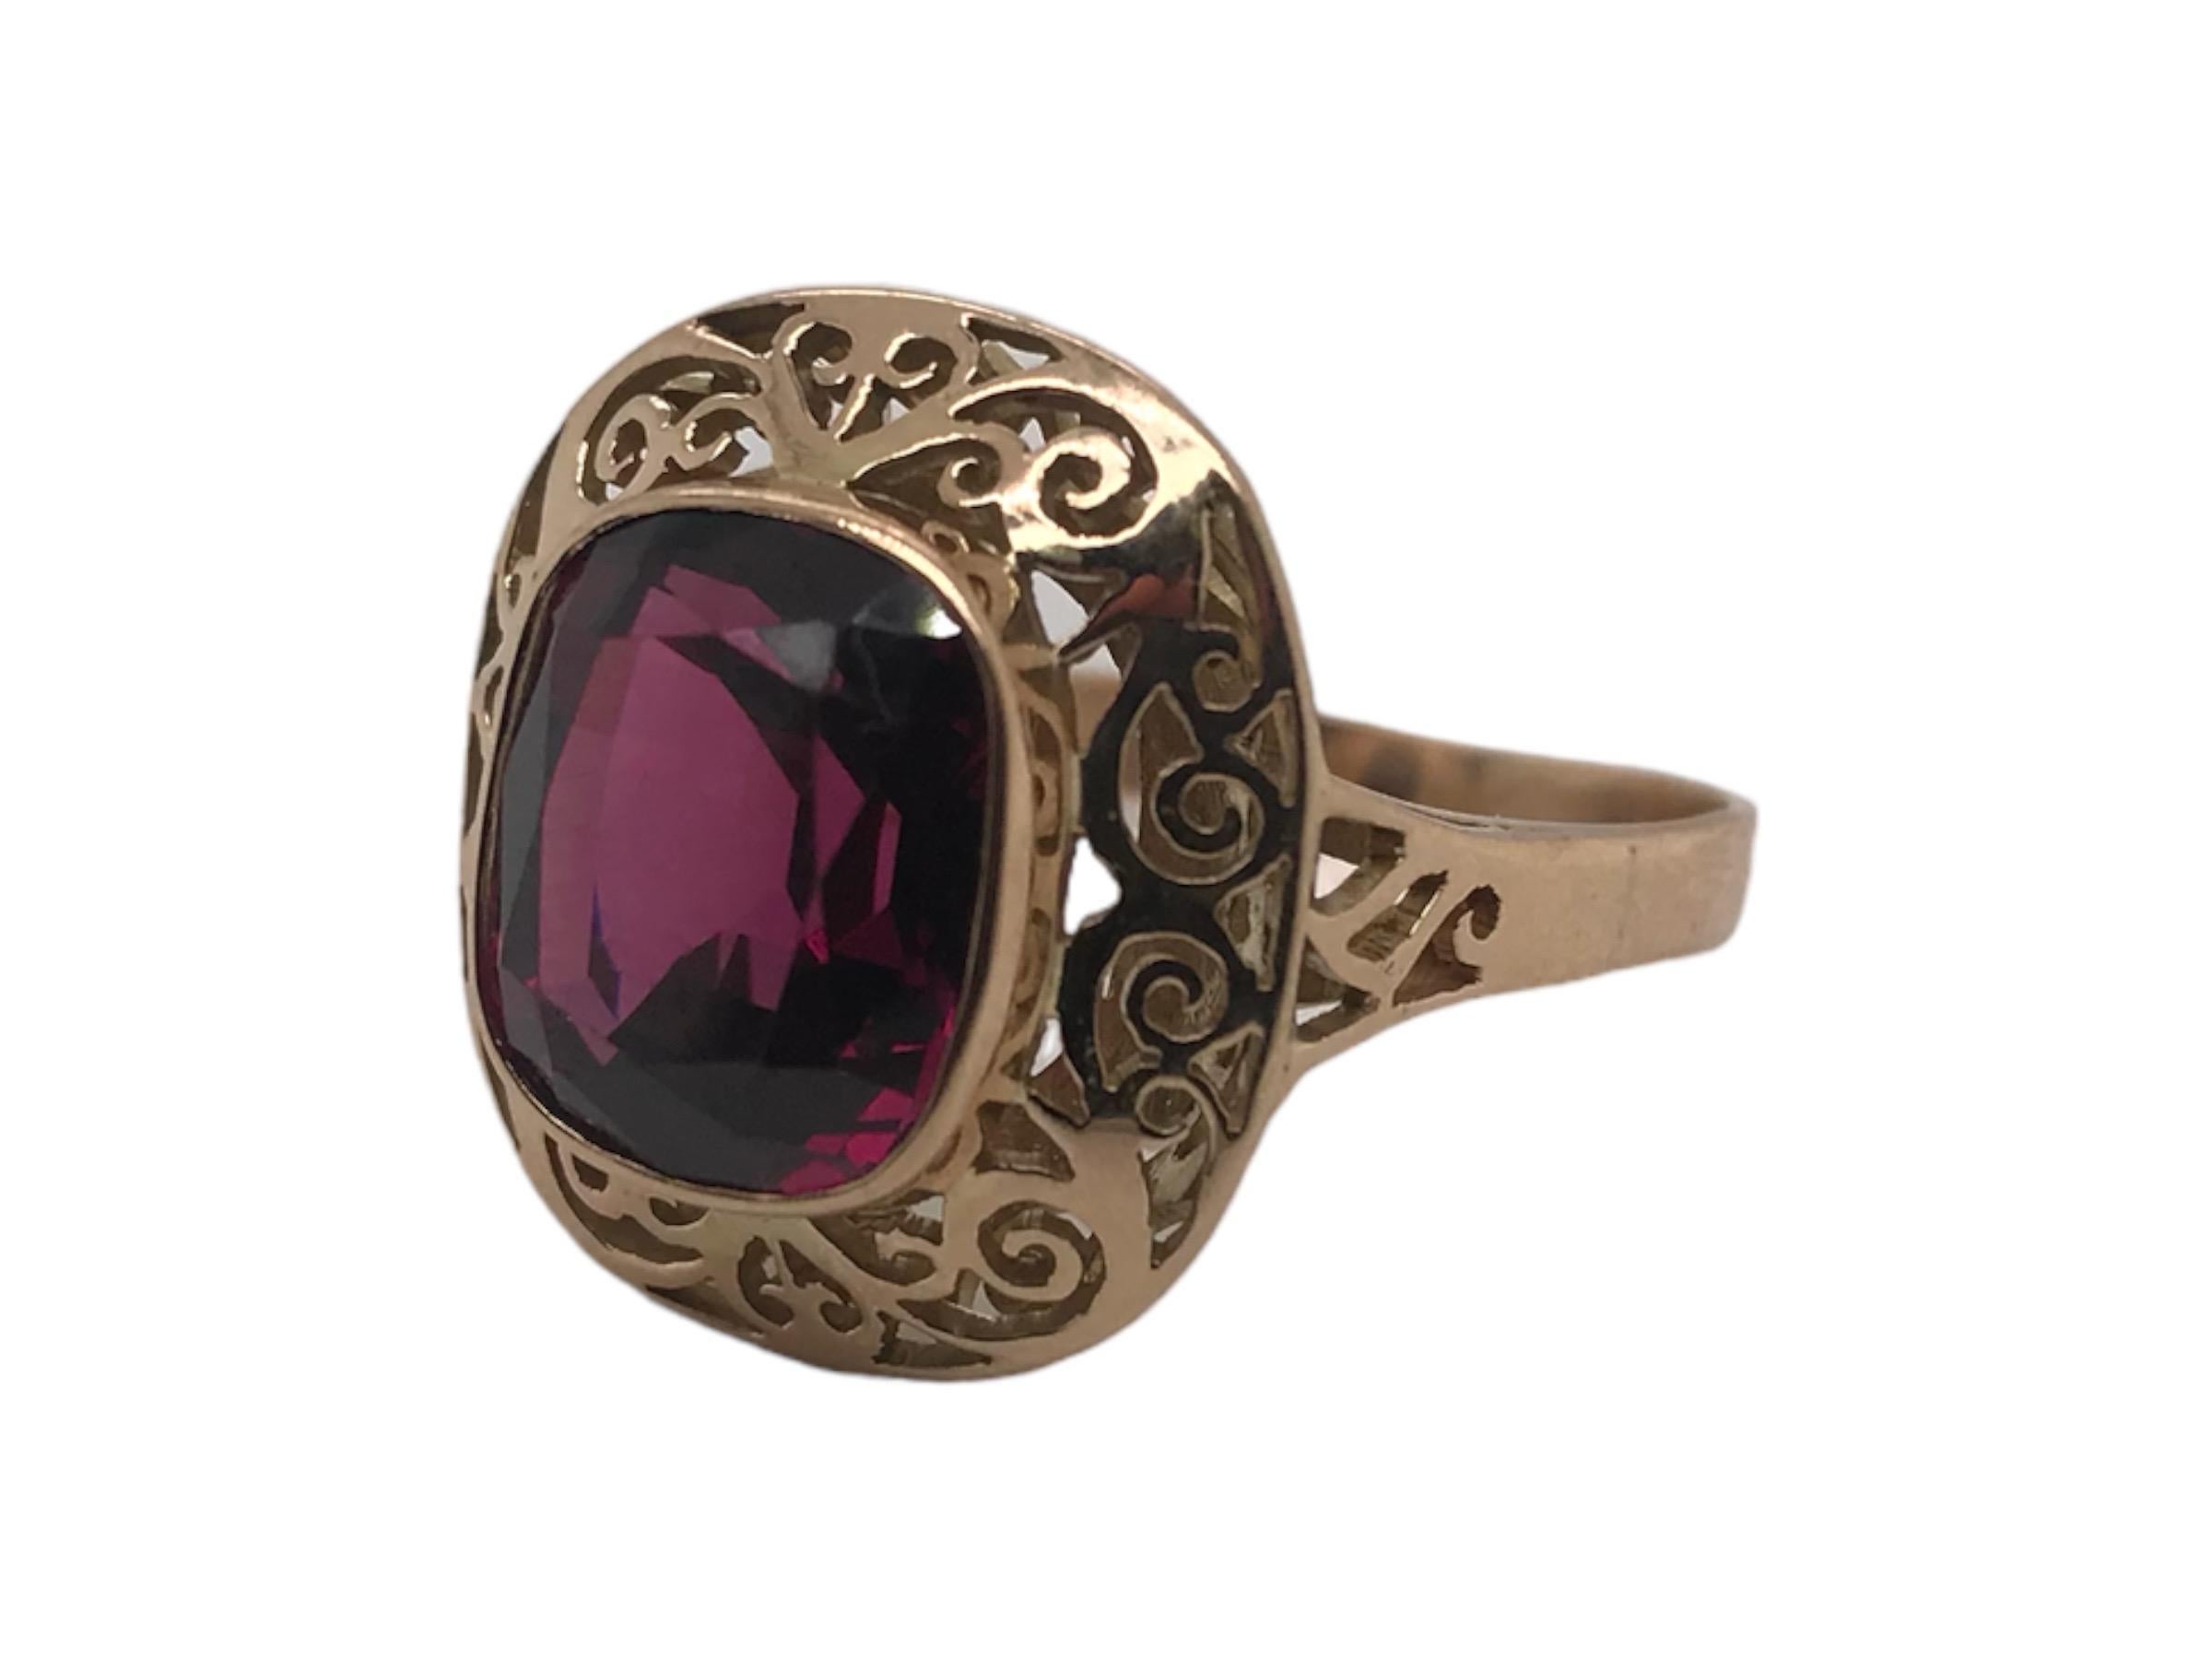 Dieser schöne Ring ist mit einem atemberaubenden Rhodolith-Granat-Edelstein von etwa 6,5 Karat besetzt.
Der Ring weist schöne filigrane Akzente auf und hat eine große Präsenz am Finger.
Rhodolith-Granate sind für ihre satten violetten bis rosa